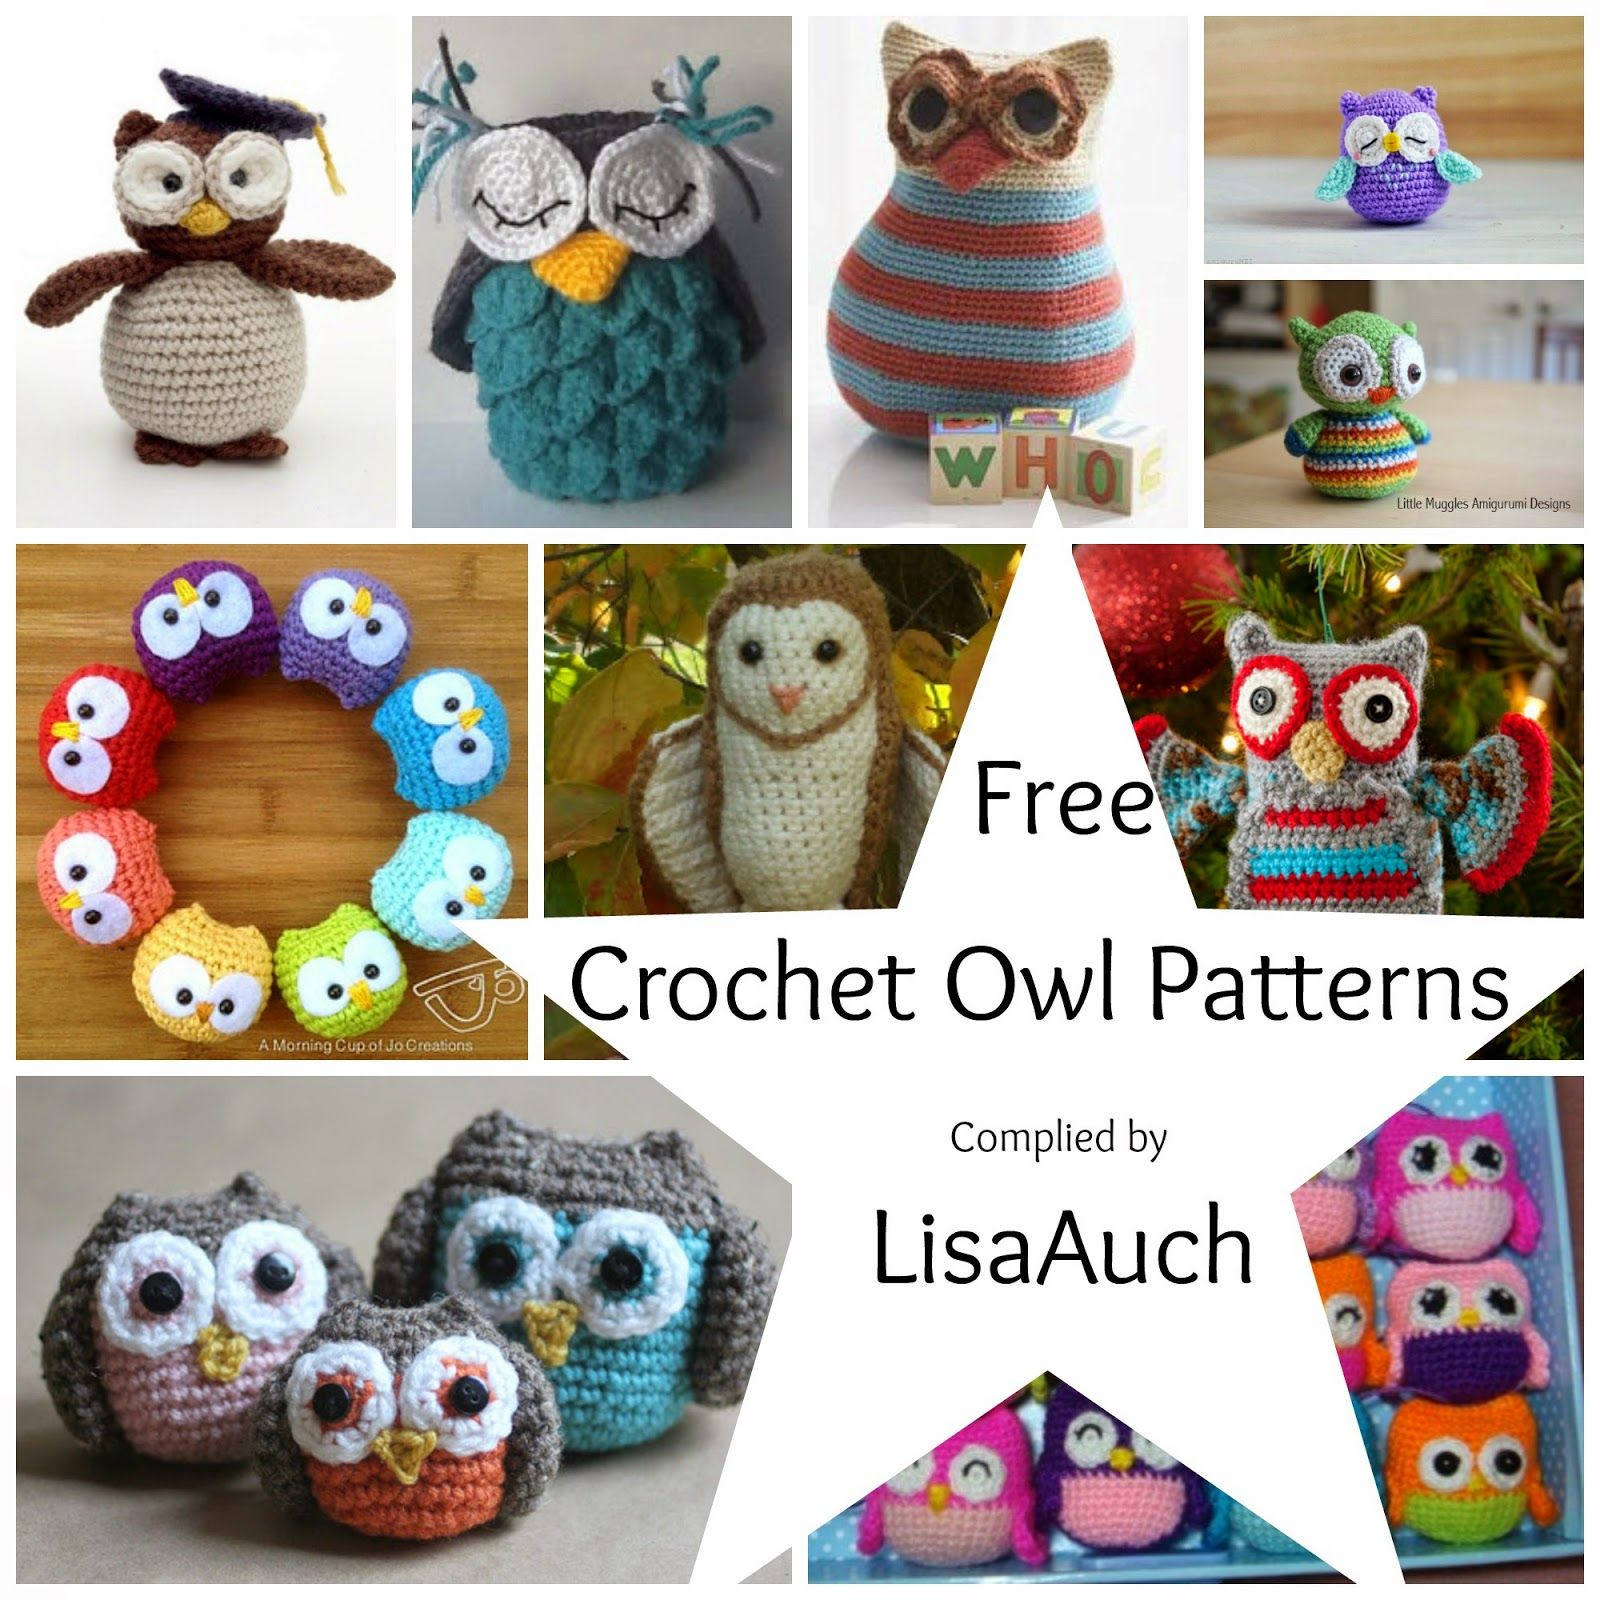 Crochet Owl Pattern Free Crochet Owl Patterns Crochet Pinterest Crochet Patterns